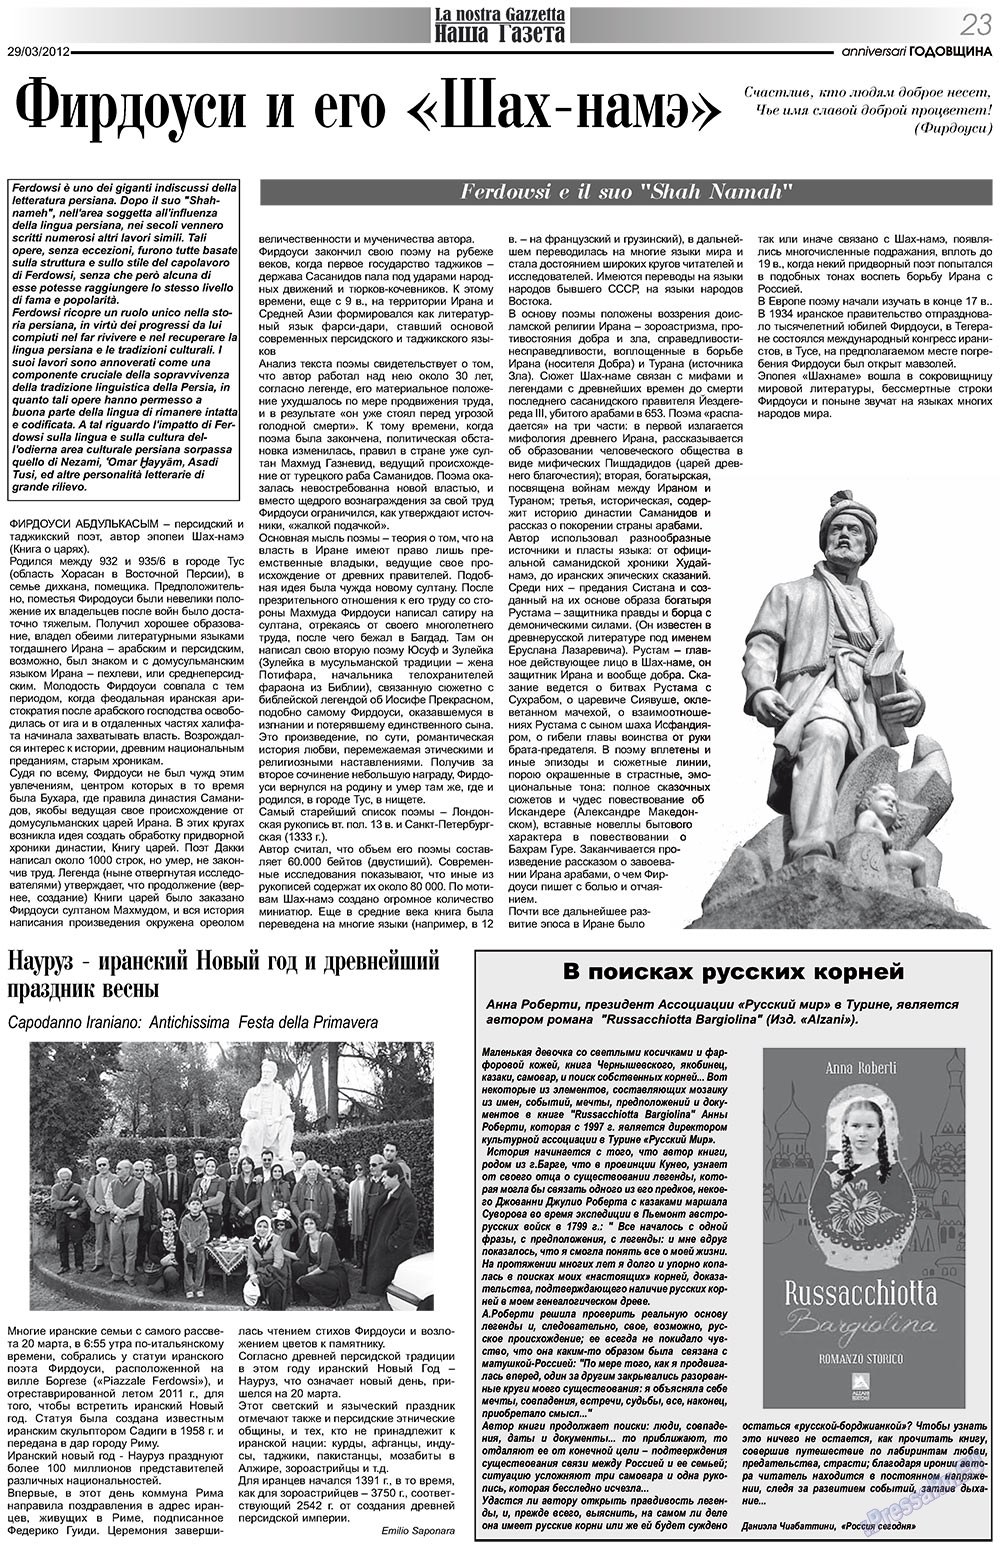 Наша Газета Италия, газета. 2012 №153 стр.23